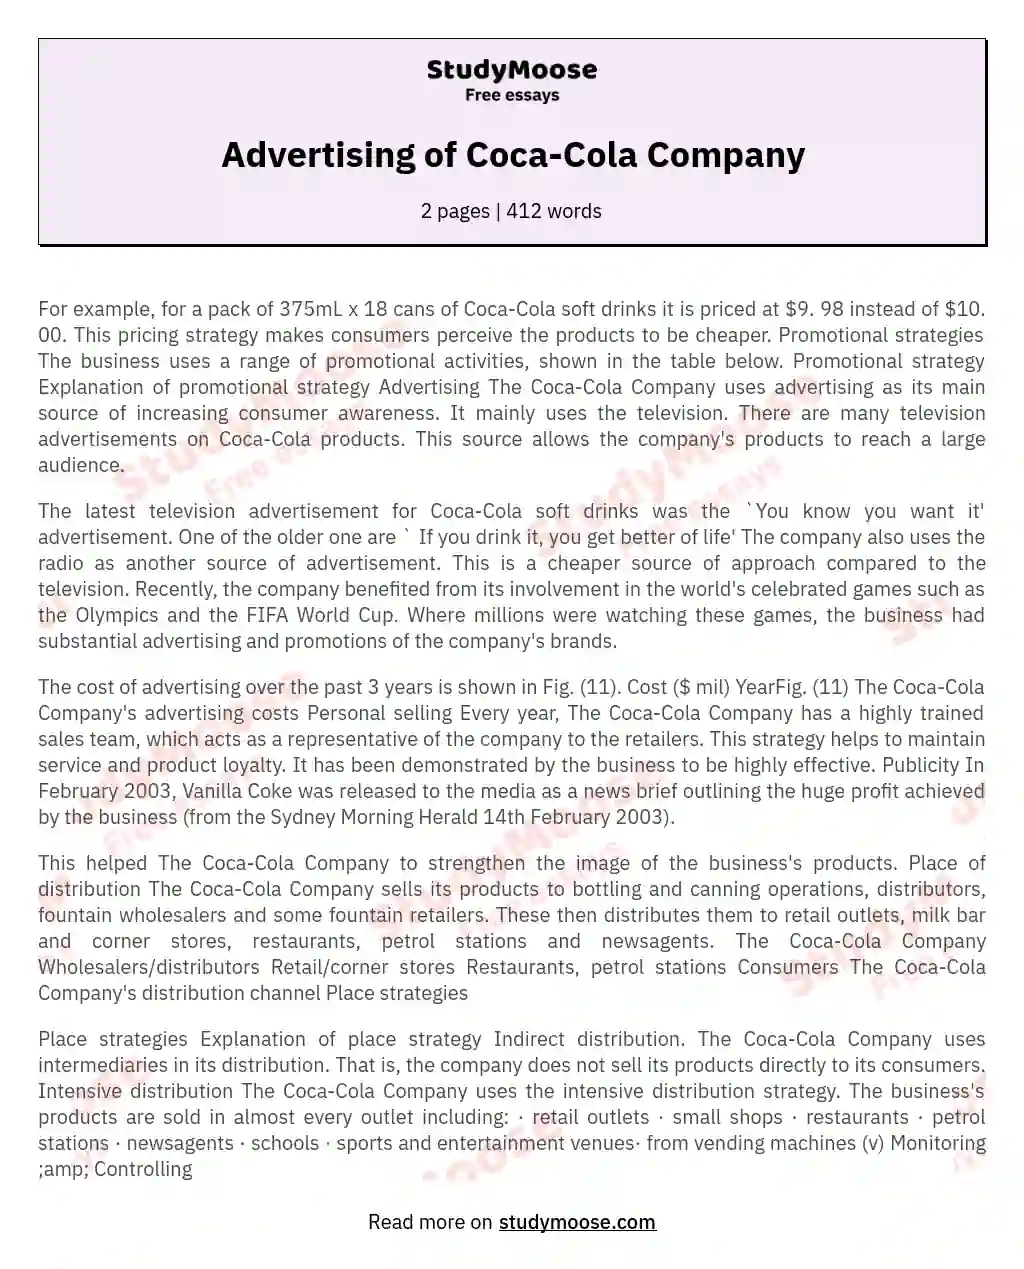 Advertising of Coca-Cola Company essay